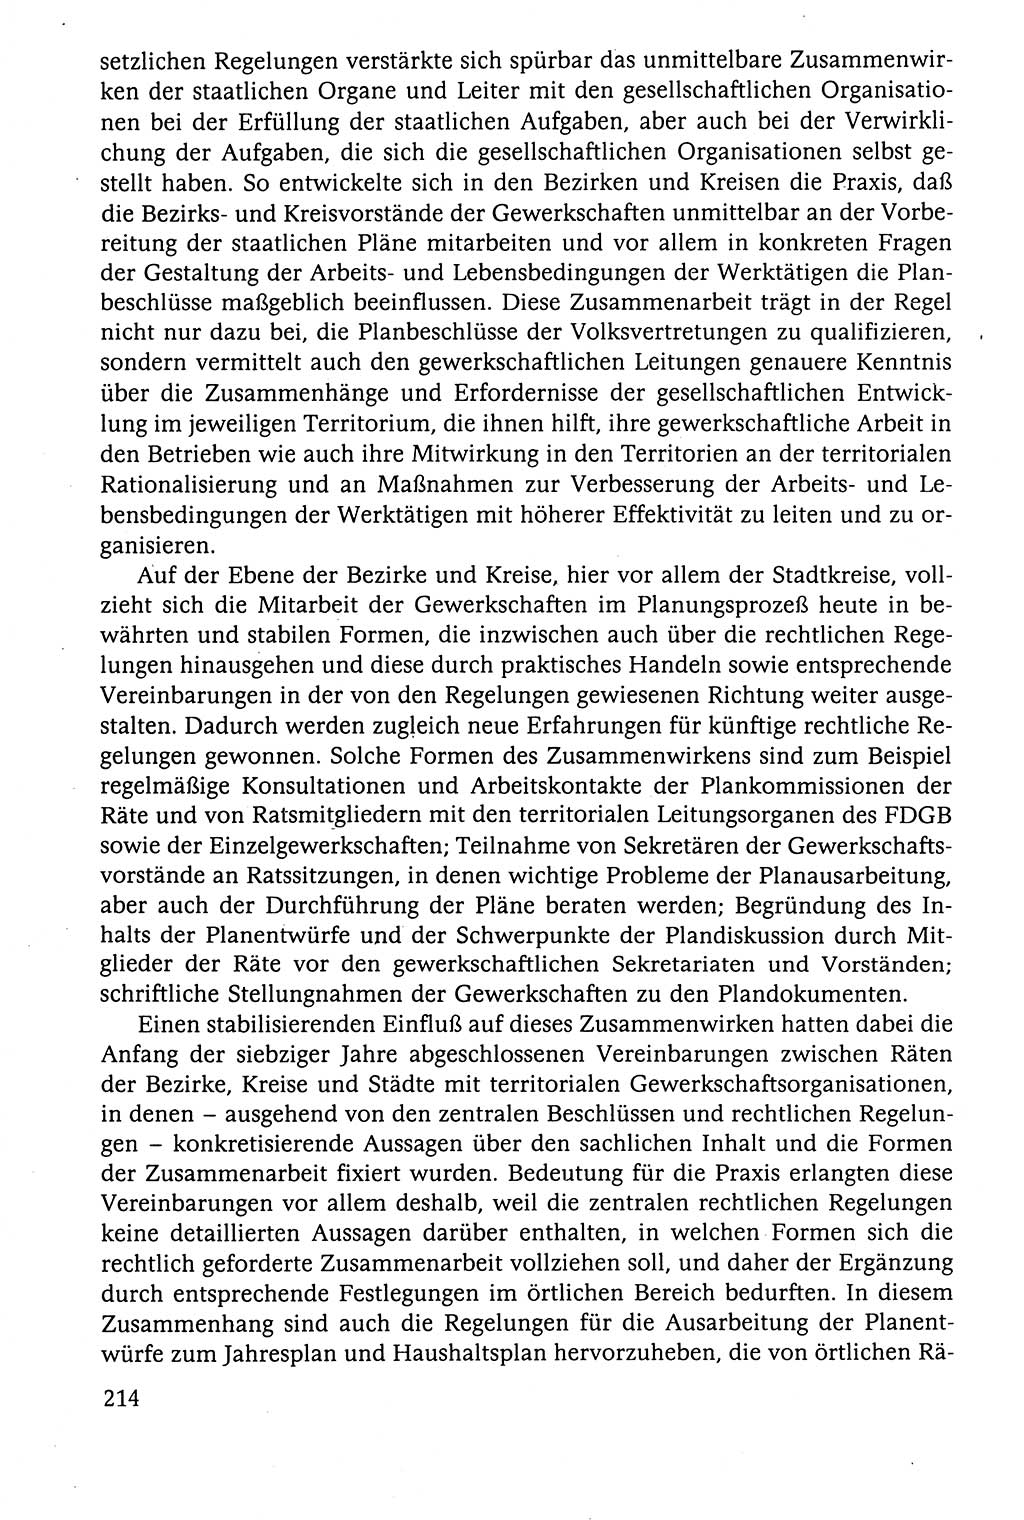 Der Staat im politischen System der DDR (Deutsche Demokratische Republik) 1986, Seite 214 (St. pol. Sys. DDR 1986, S. 214)